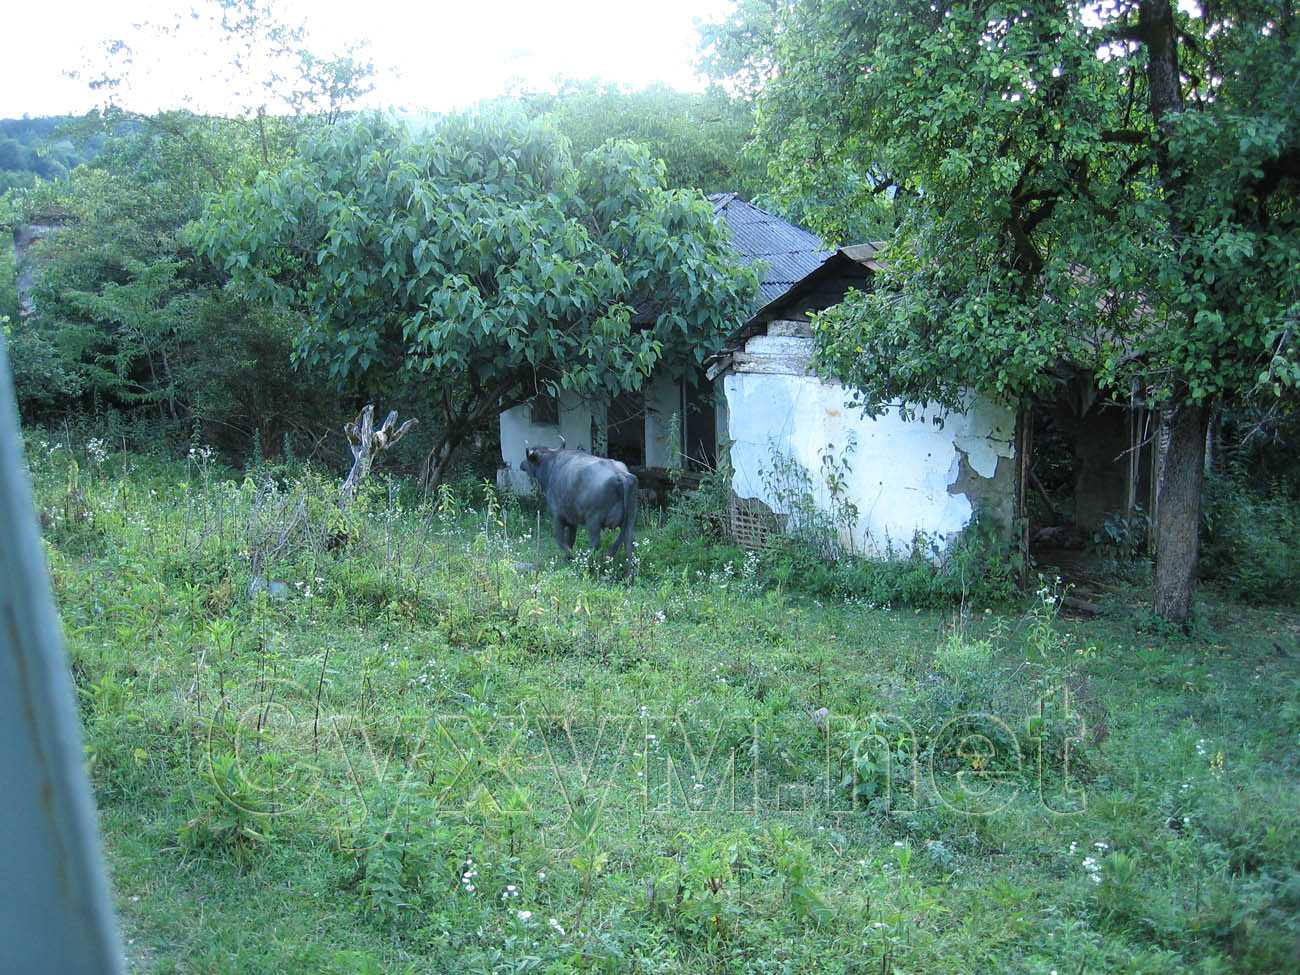 абхазский буйвол идёт своей дорогой